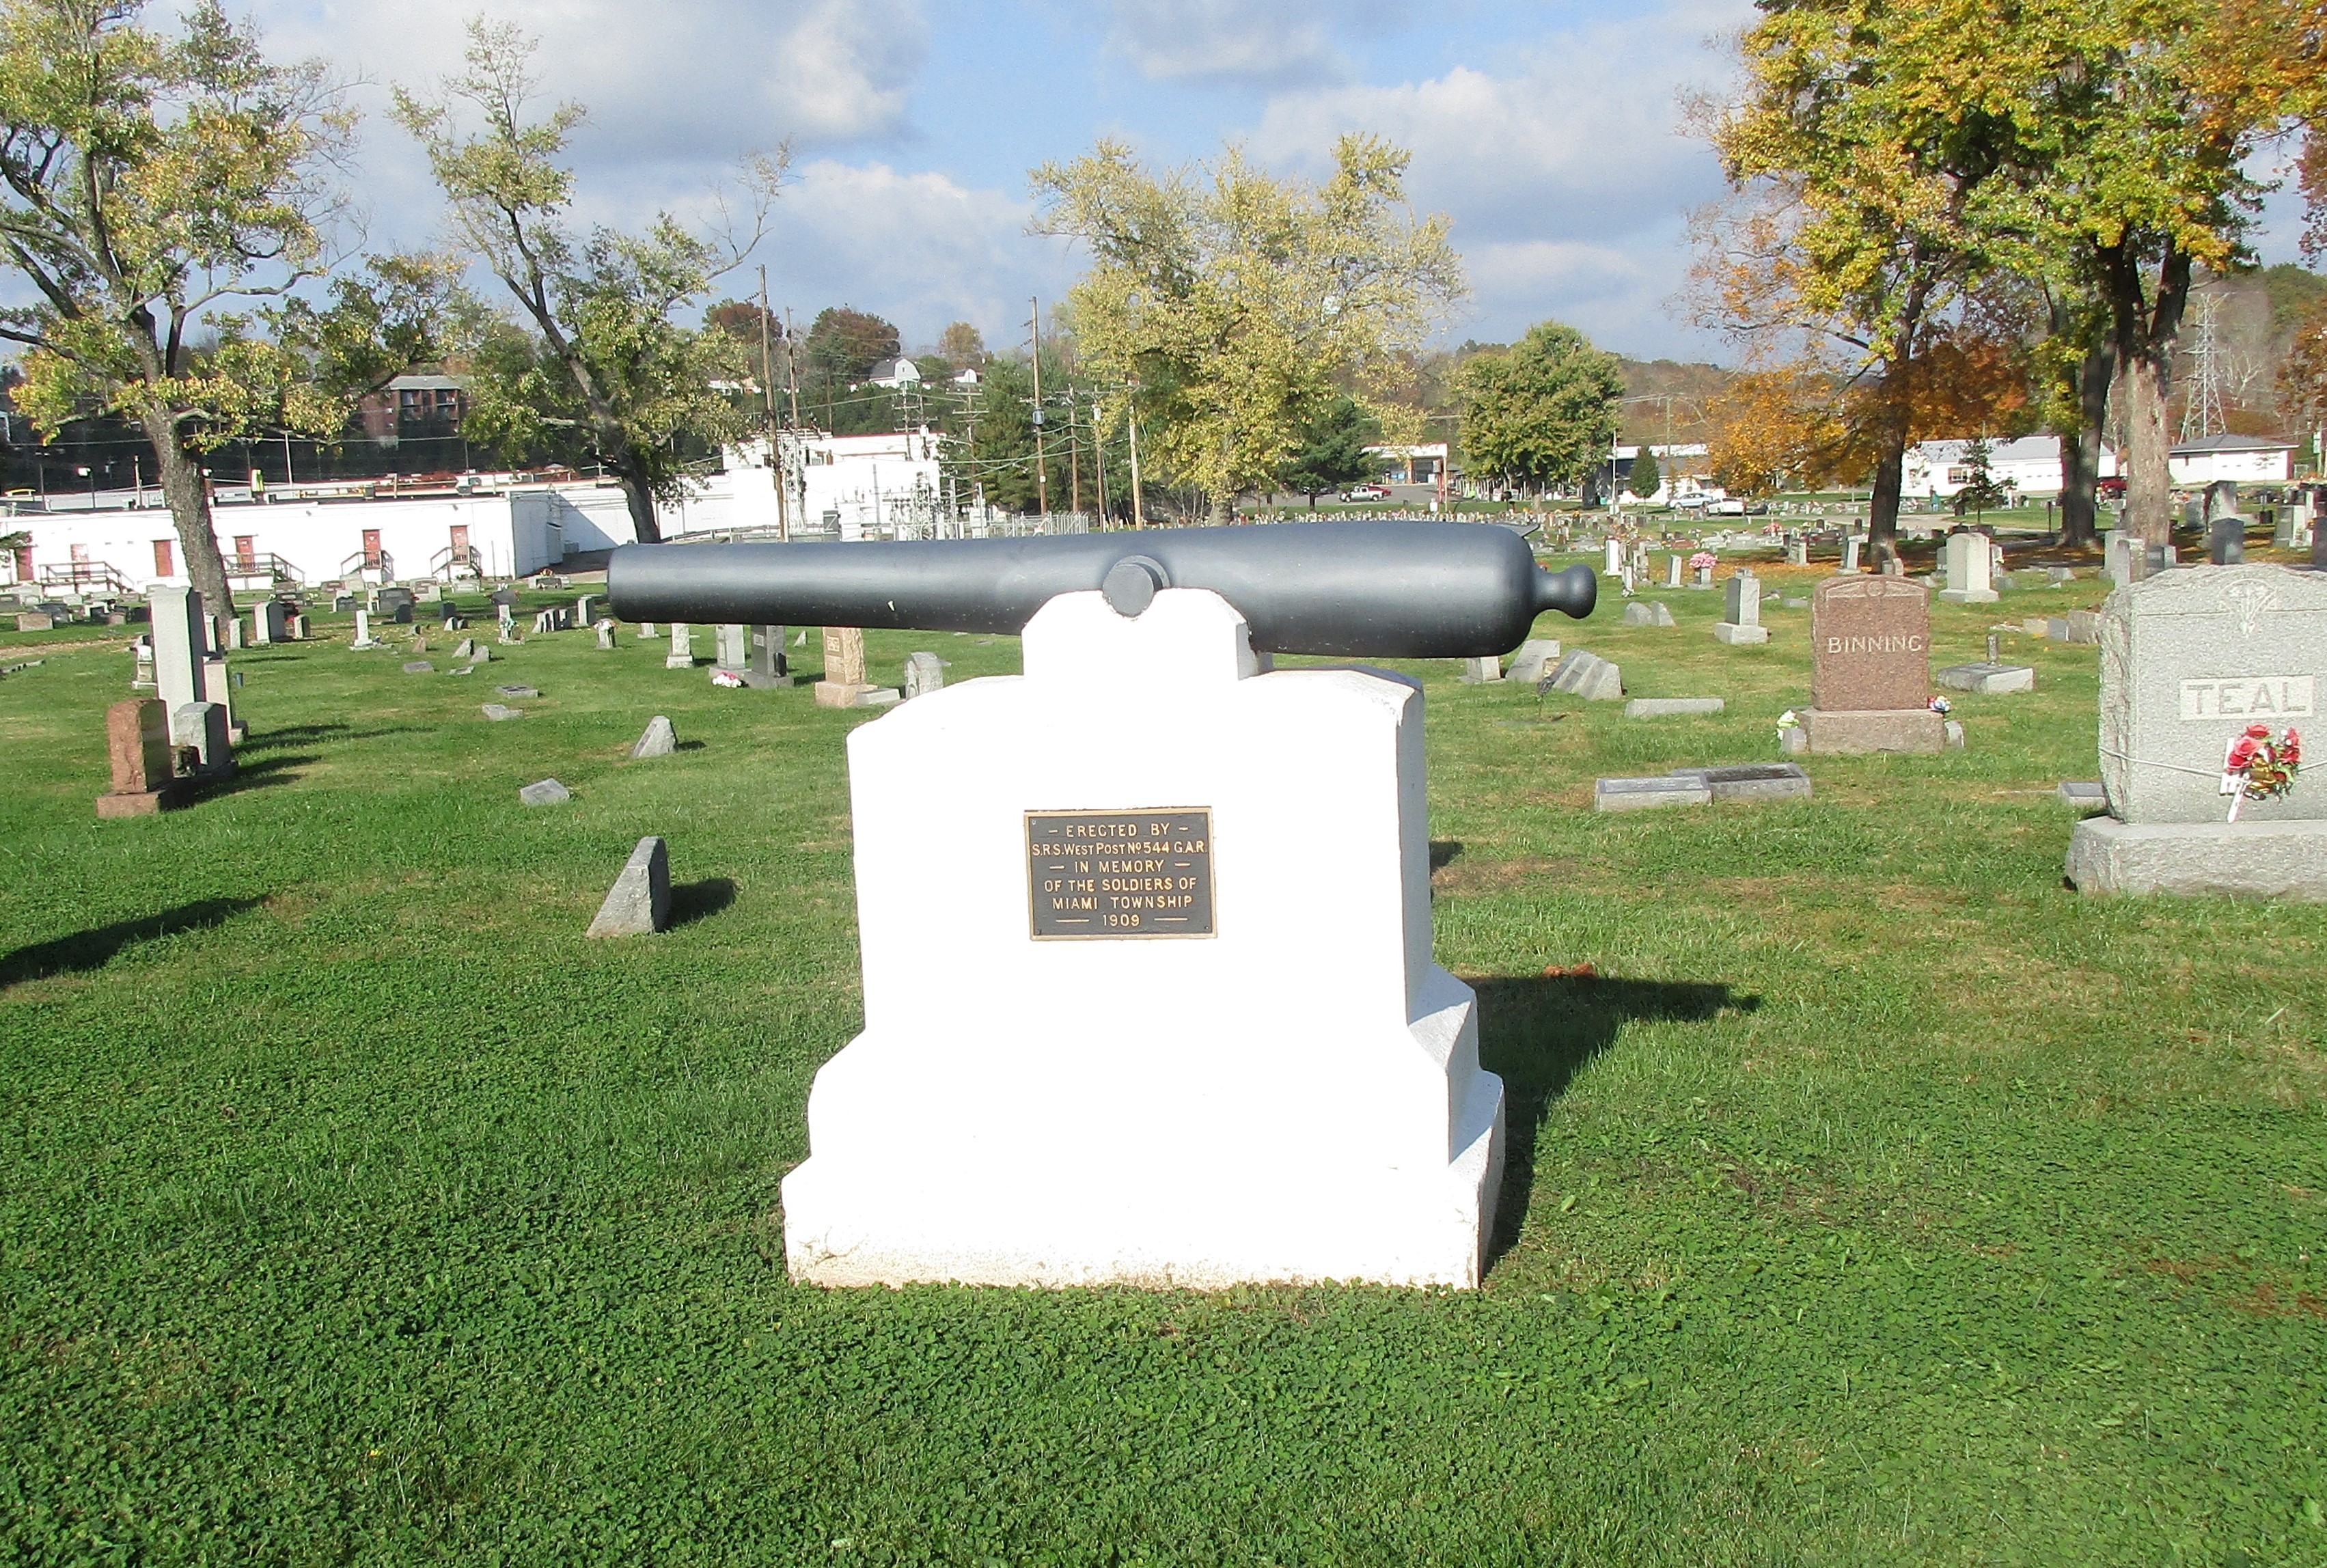 Milford GAR Veterans Memorial Marker